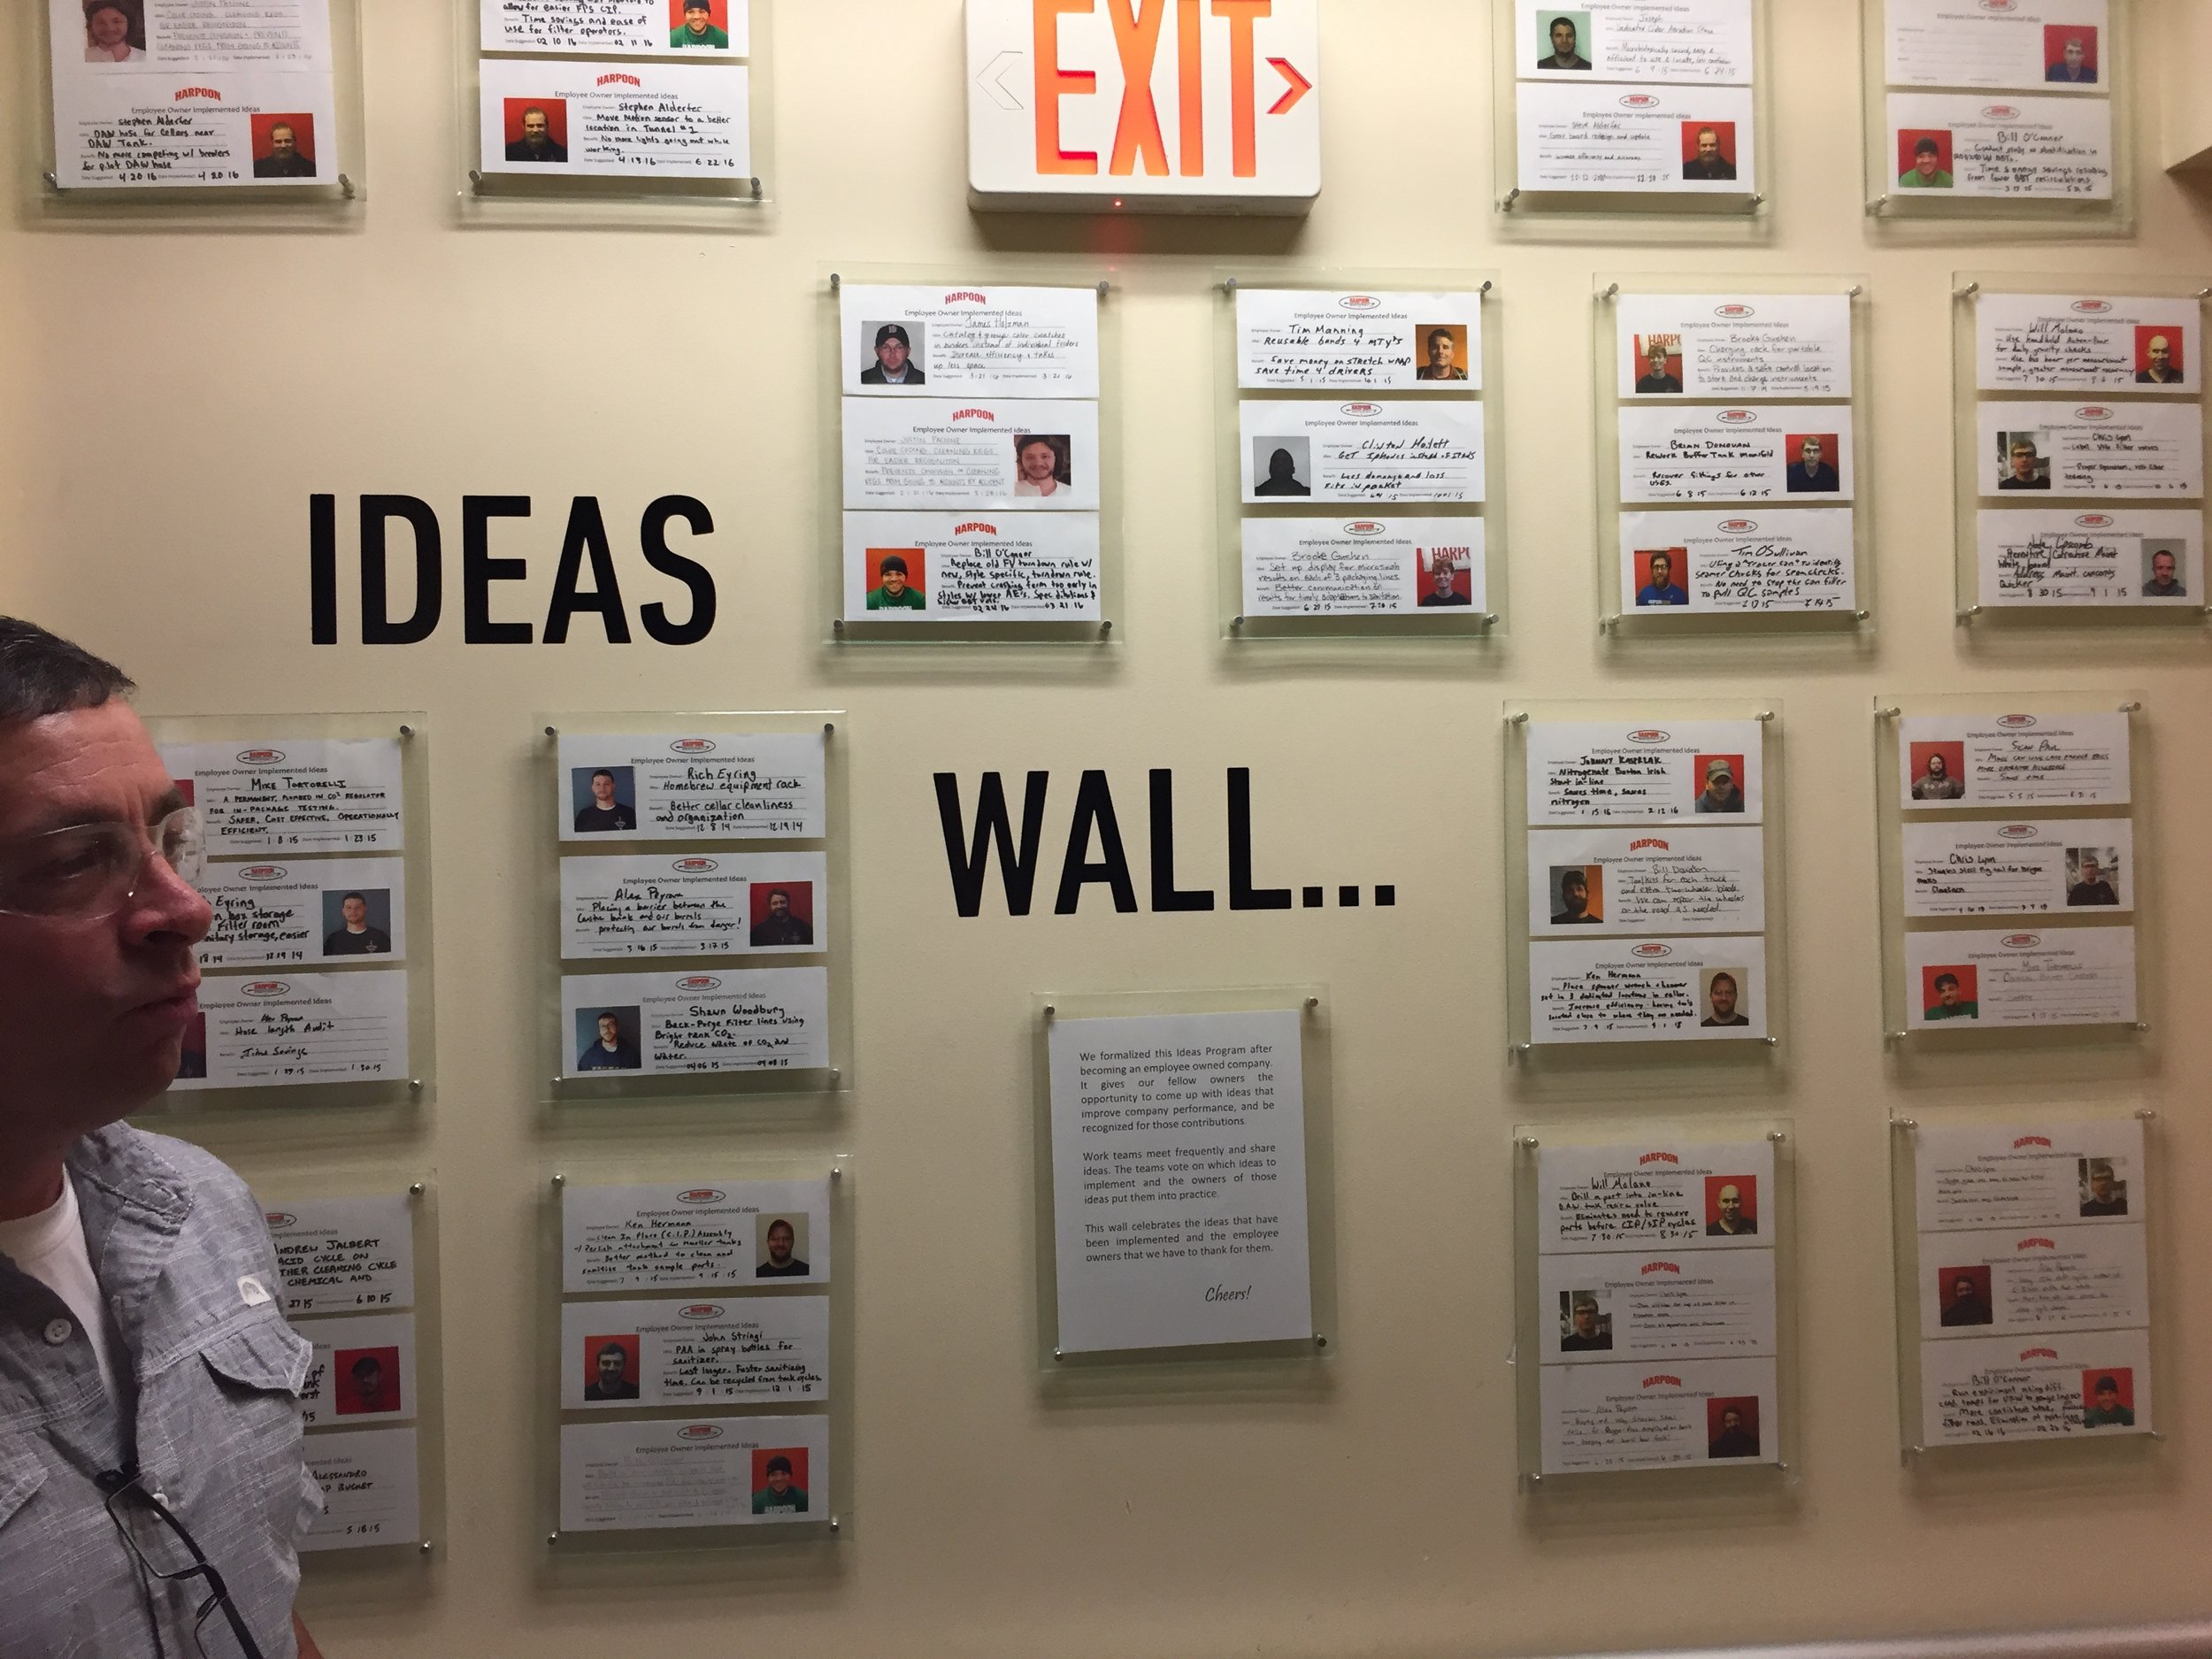 Employee idea wall.